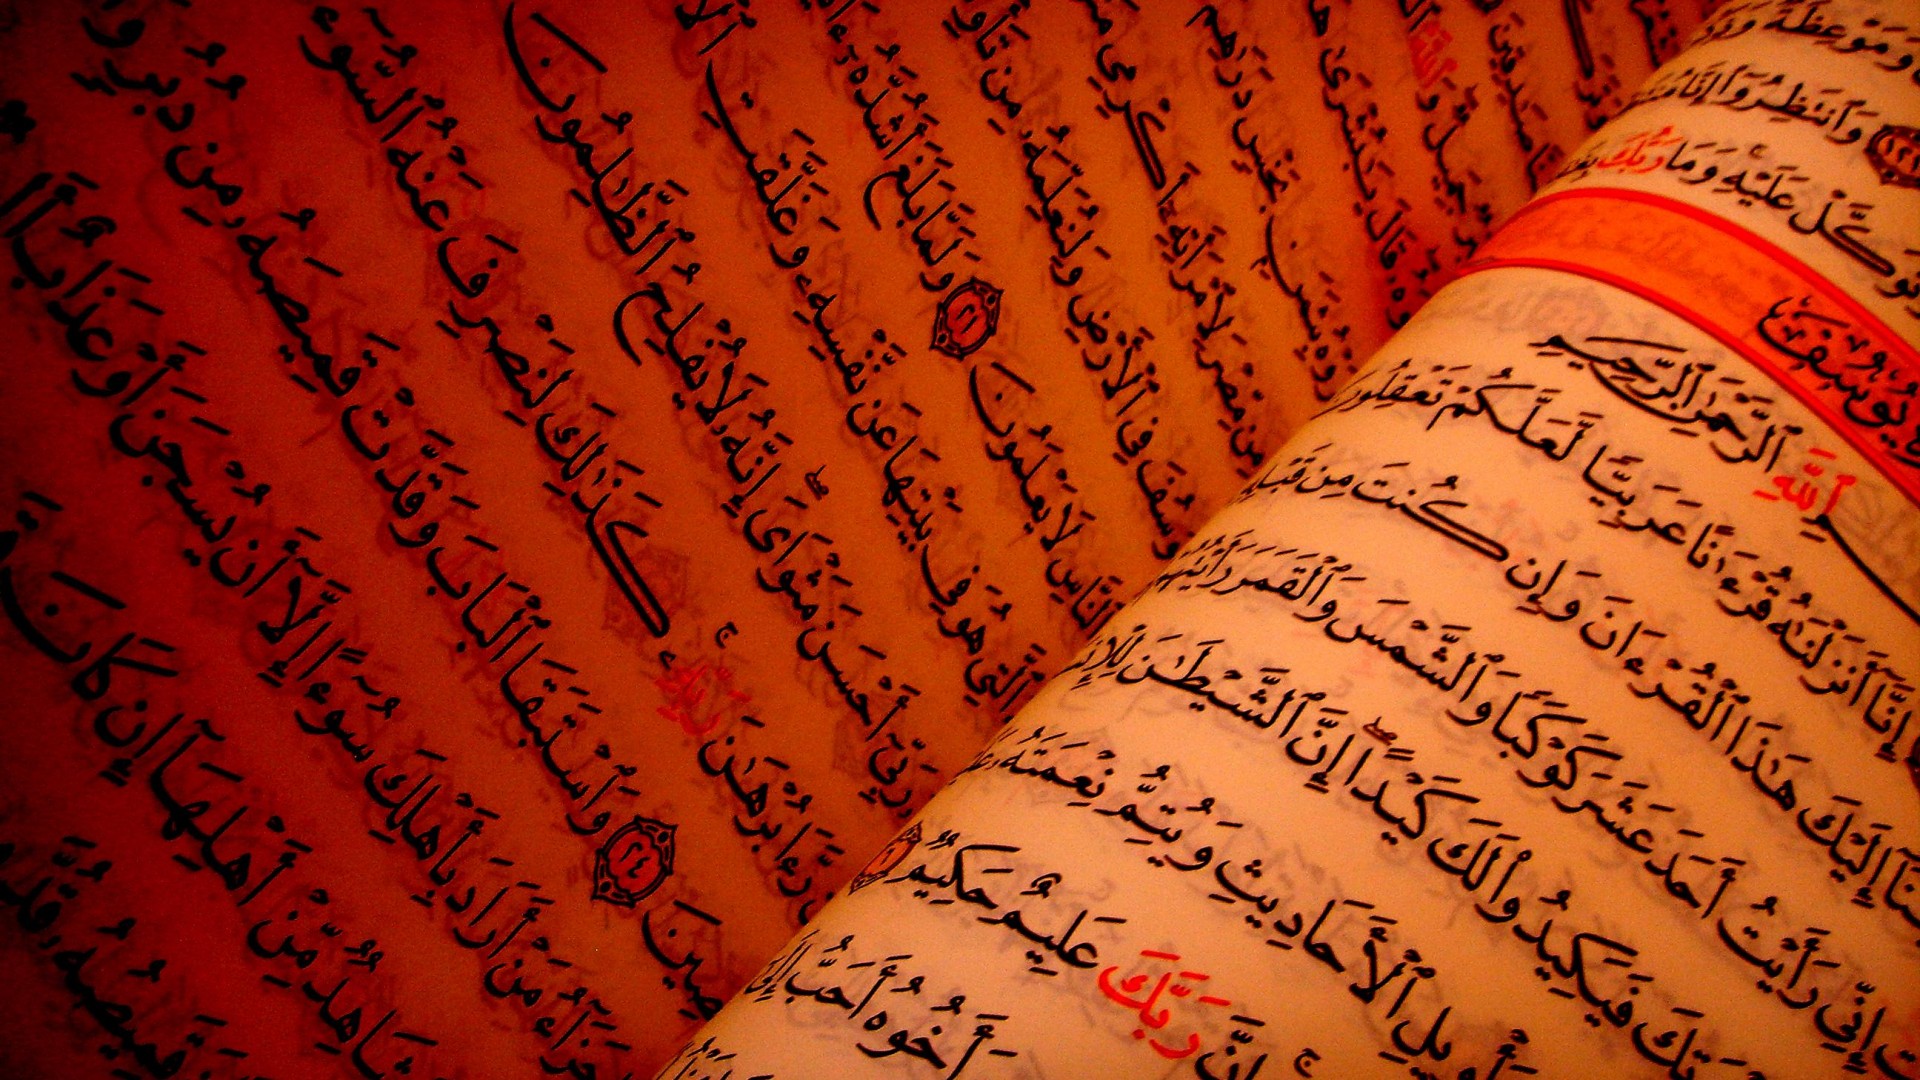 Quran Text HD Desktop Wallpaper High Quality